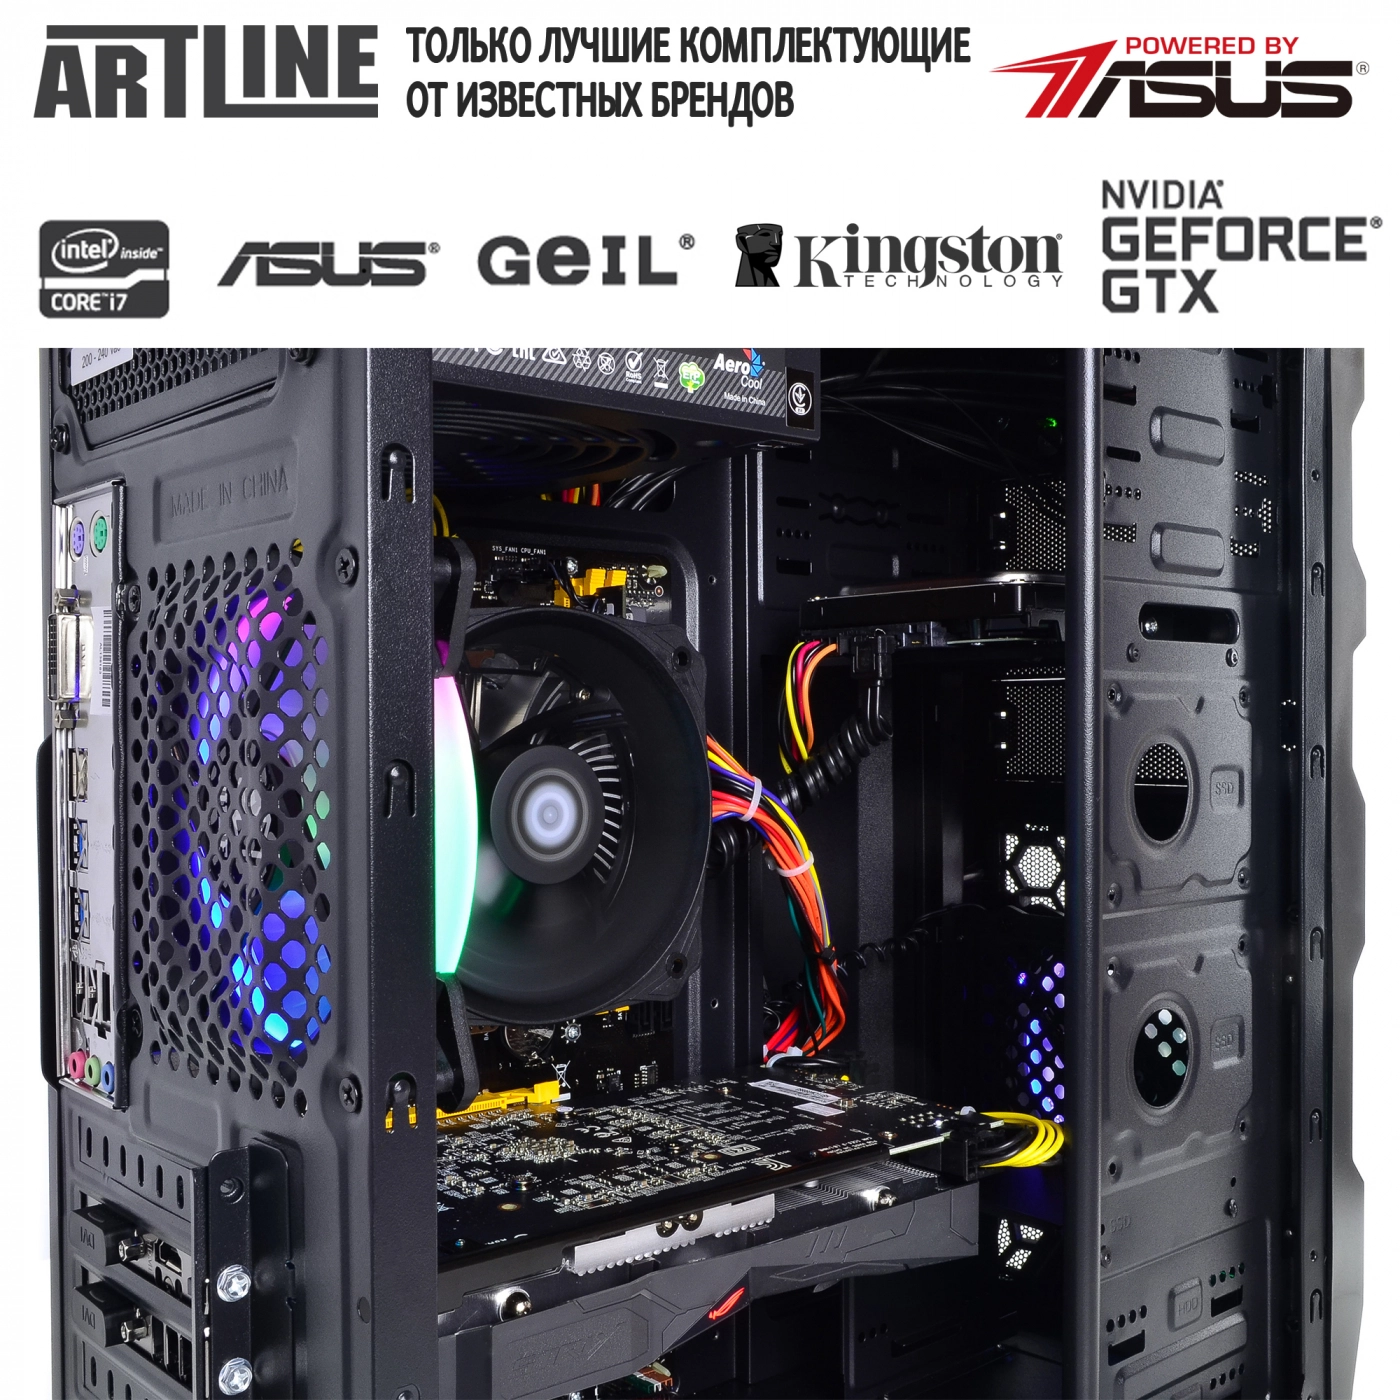 Купить Компьютер ARTLINE Gaming X43v04 - фото 6